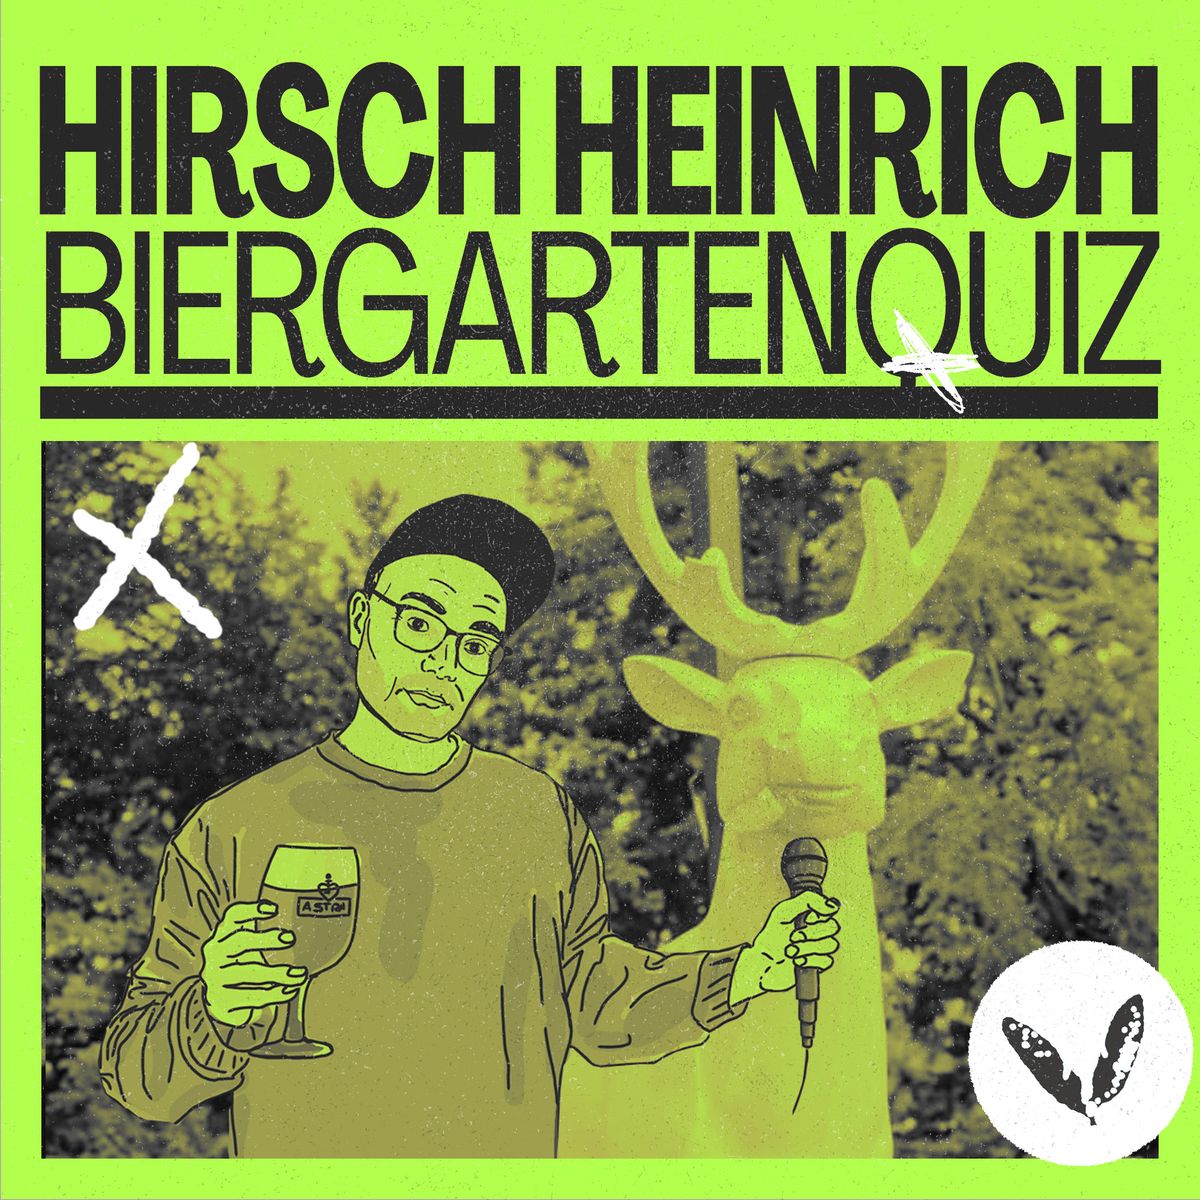 Hirsch Heinrich Biergarten - Quiz im Juni 